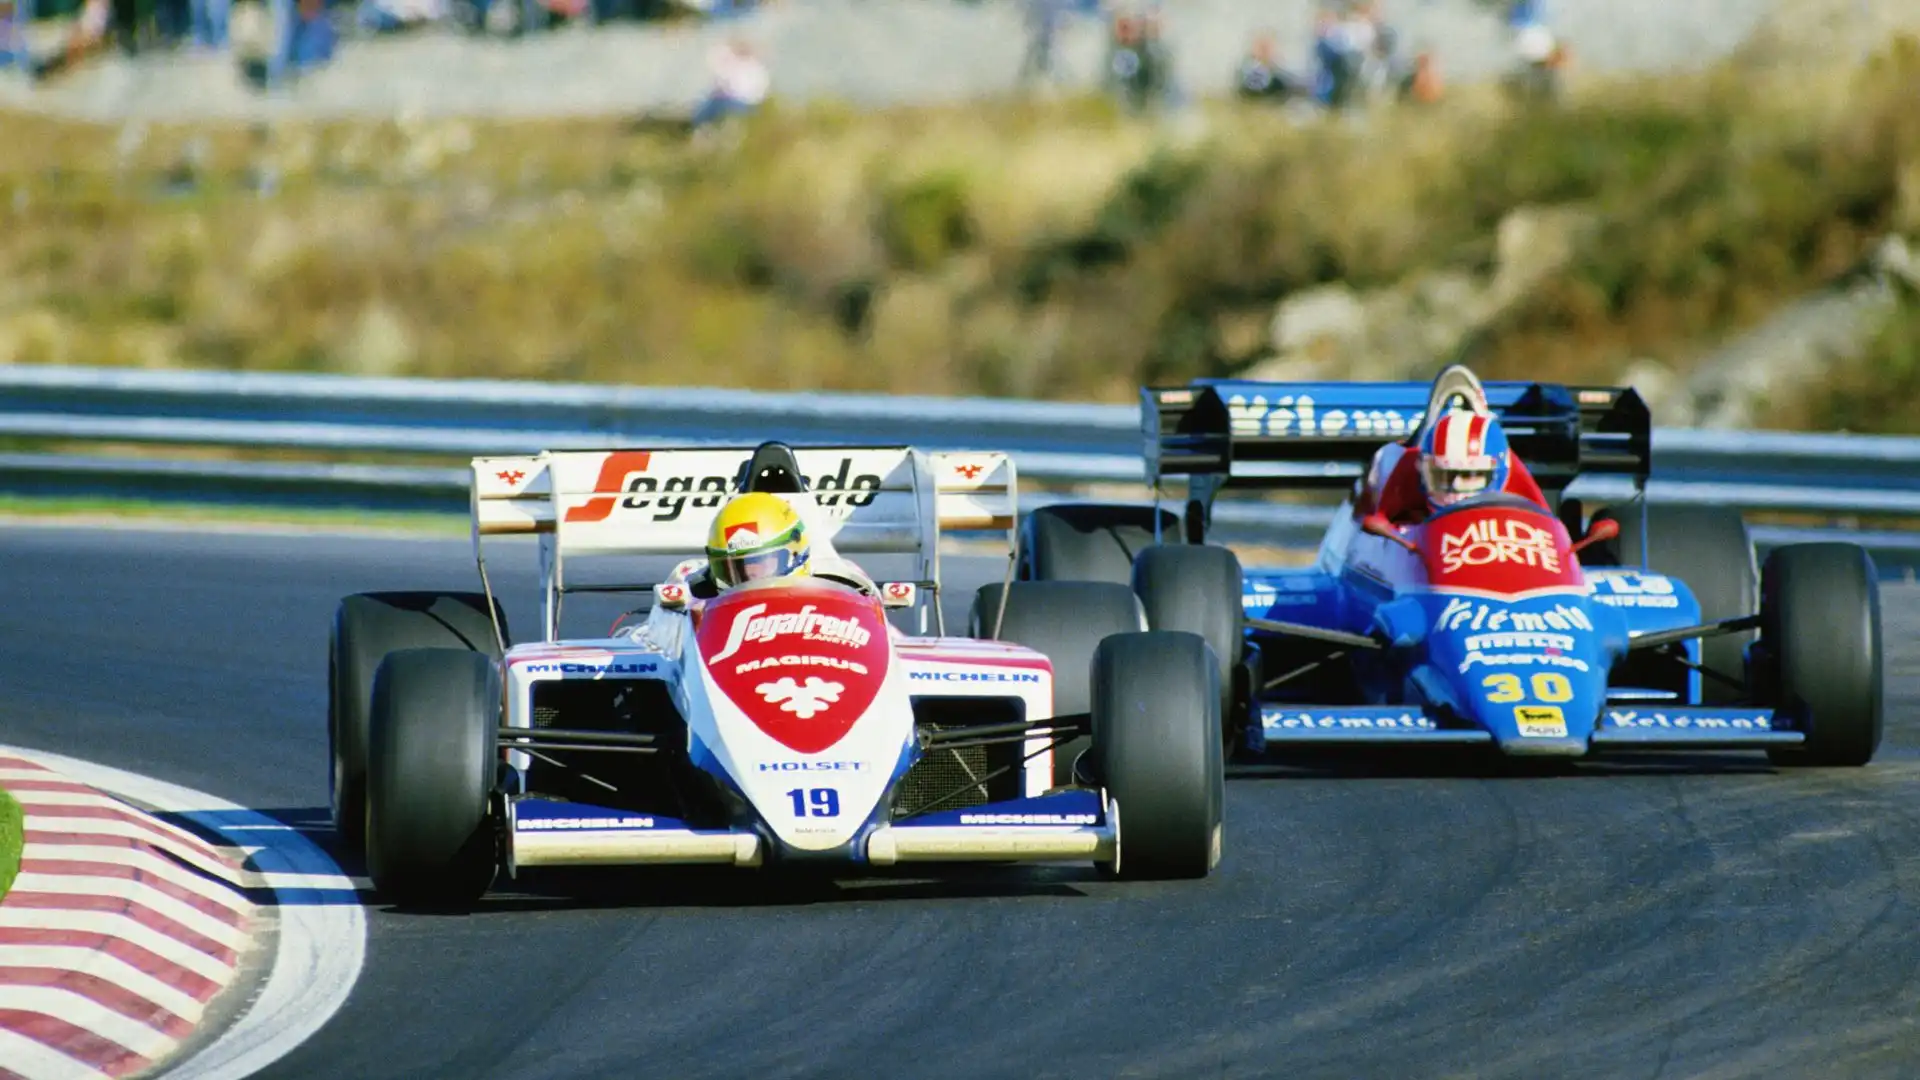 La Toleman ha gareggiato in F1 dal 1981 al 1985